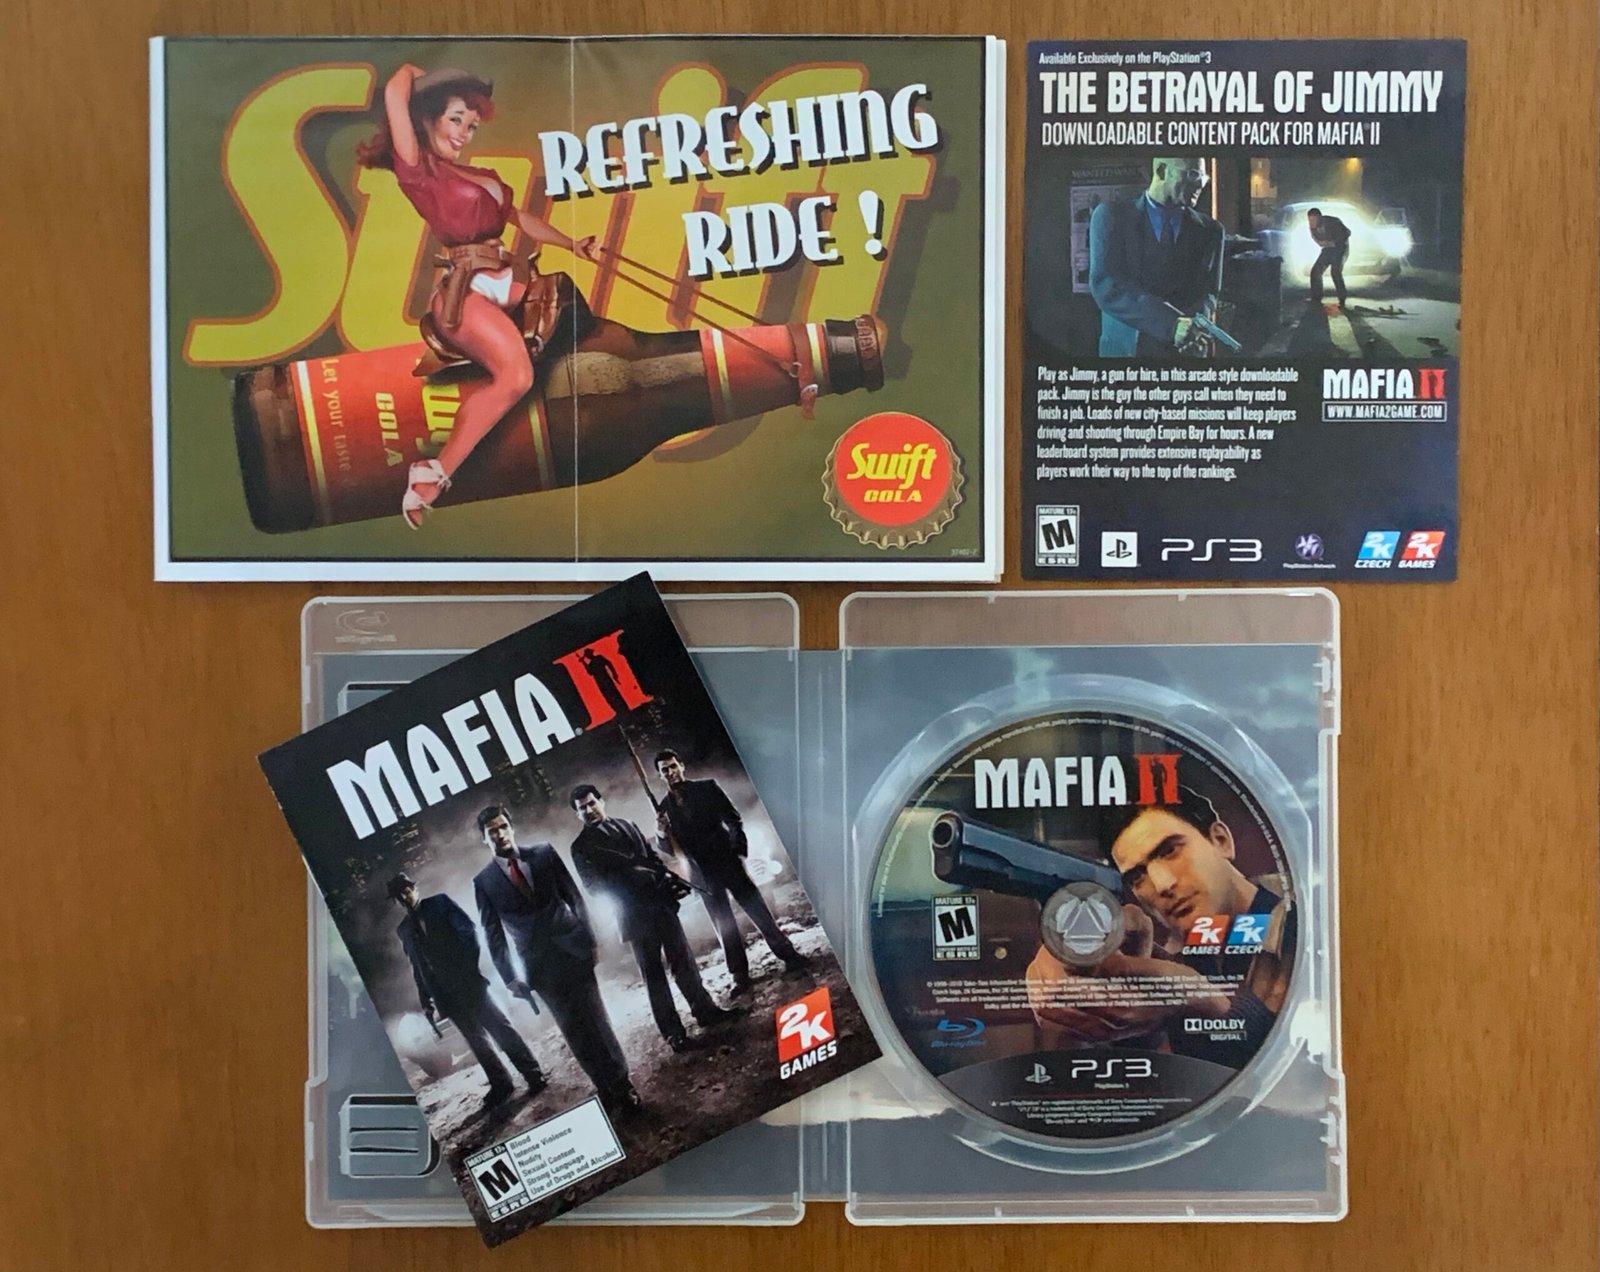 Jogo Mafia III PS4 2K com o Melhor Preço é no Zoom